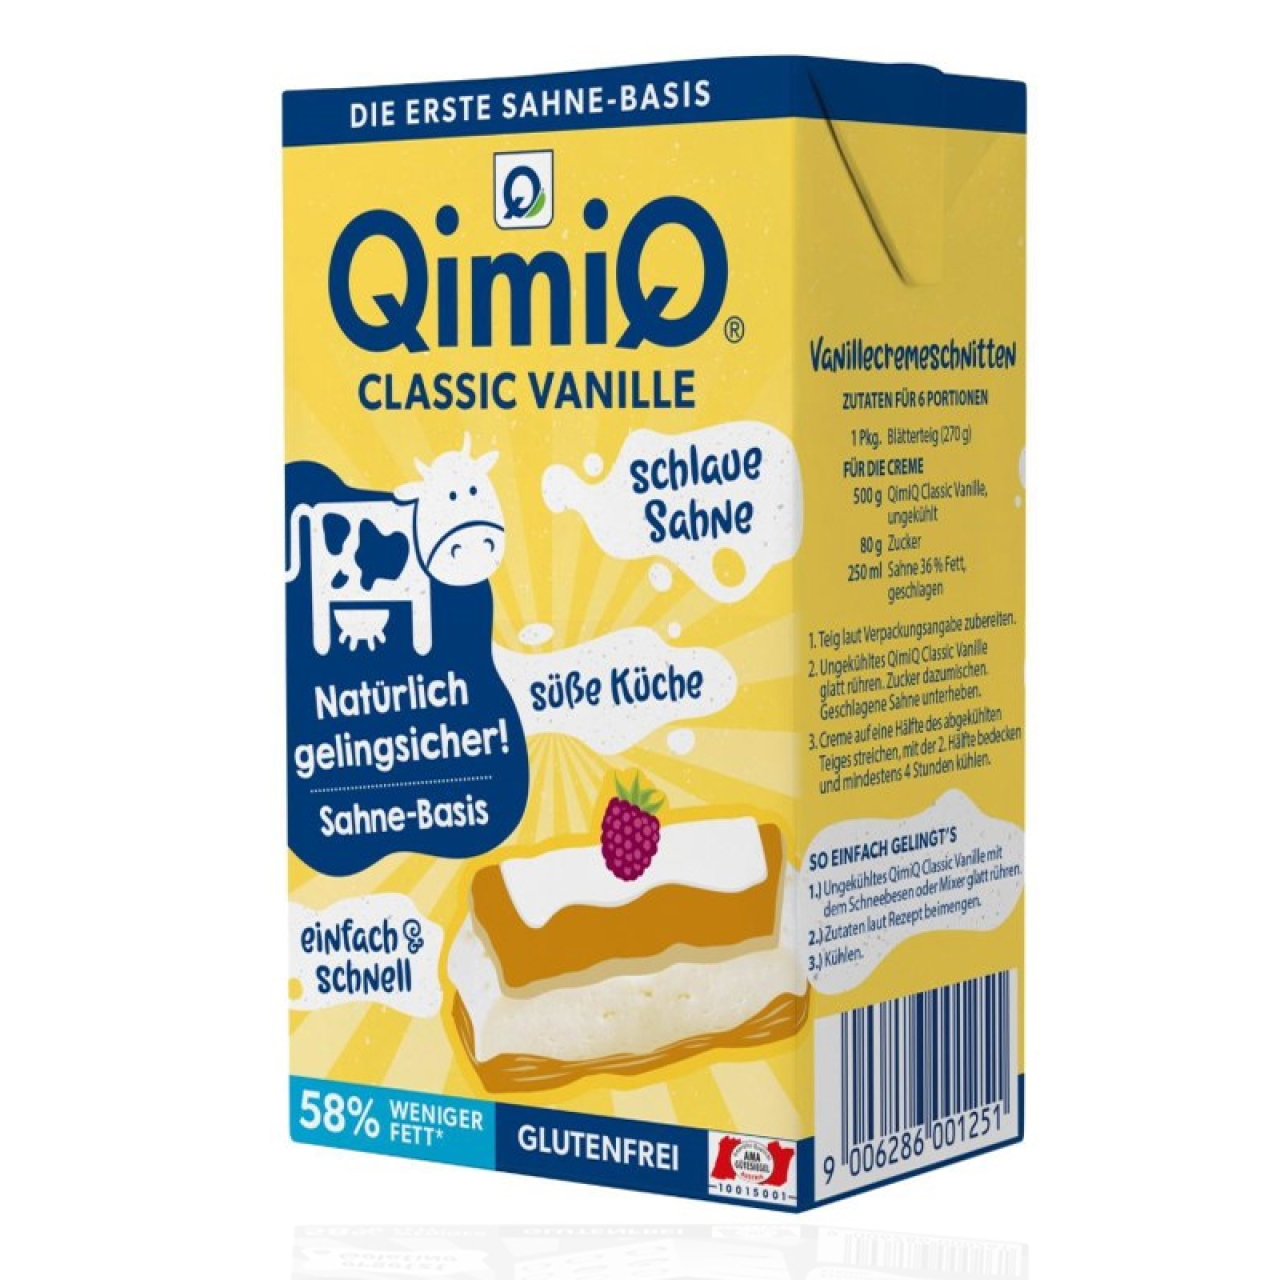 Qimiq Vanille Classic